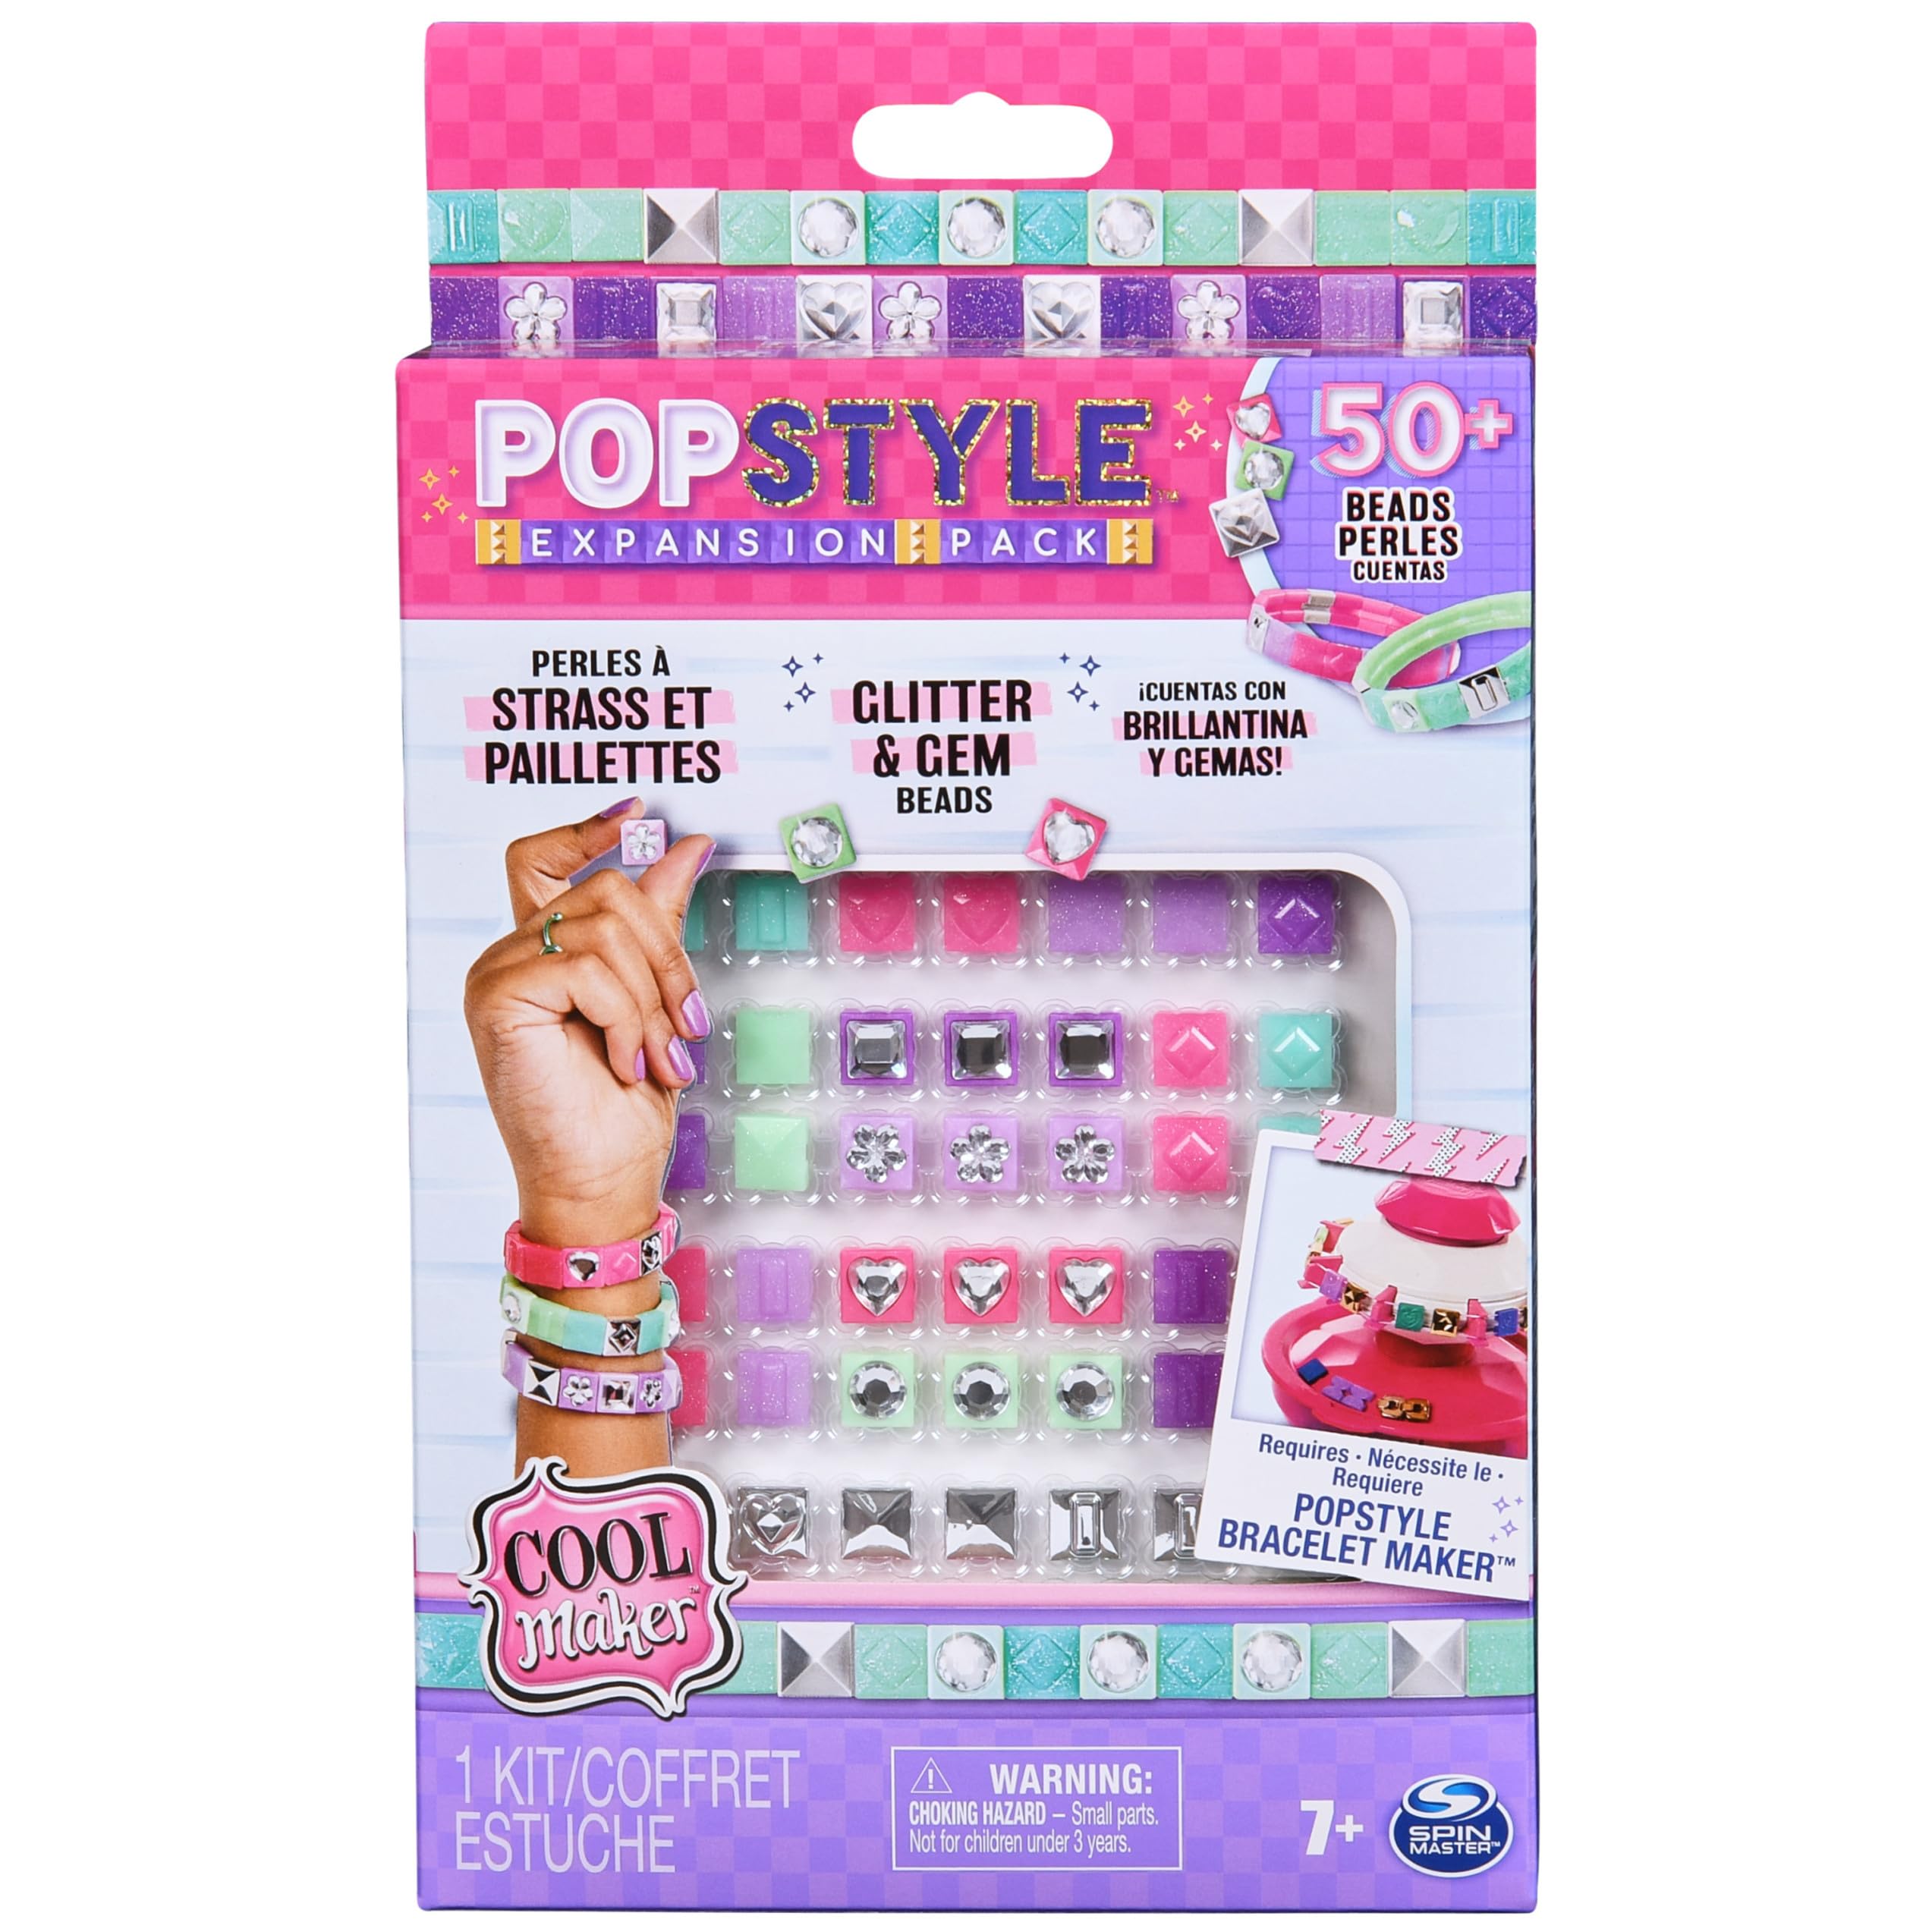 Cool Maker PopStyle Bracelet Maker Expansion Pack, 50+ Gem Beads, 3 Friendship Bracelets, Bracelet Making Kit, DIY Arts & Crafts Kids Toys for Girls